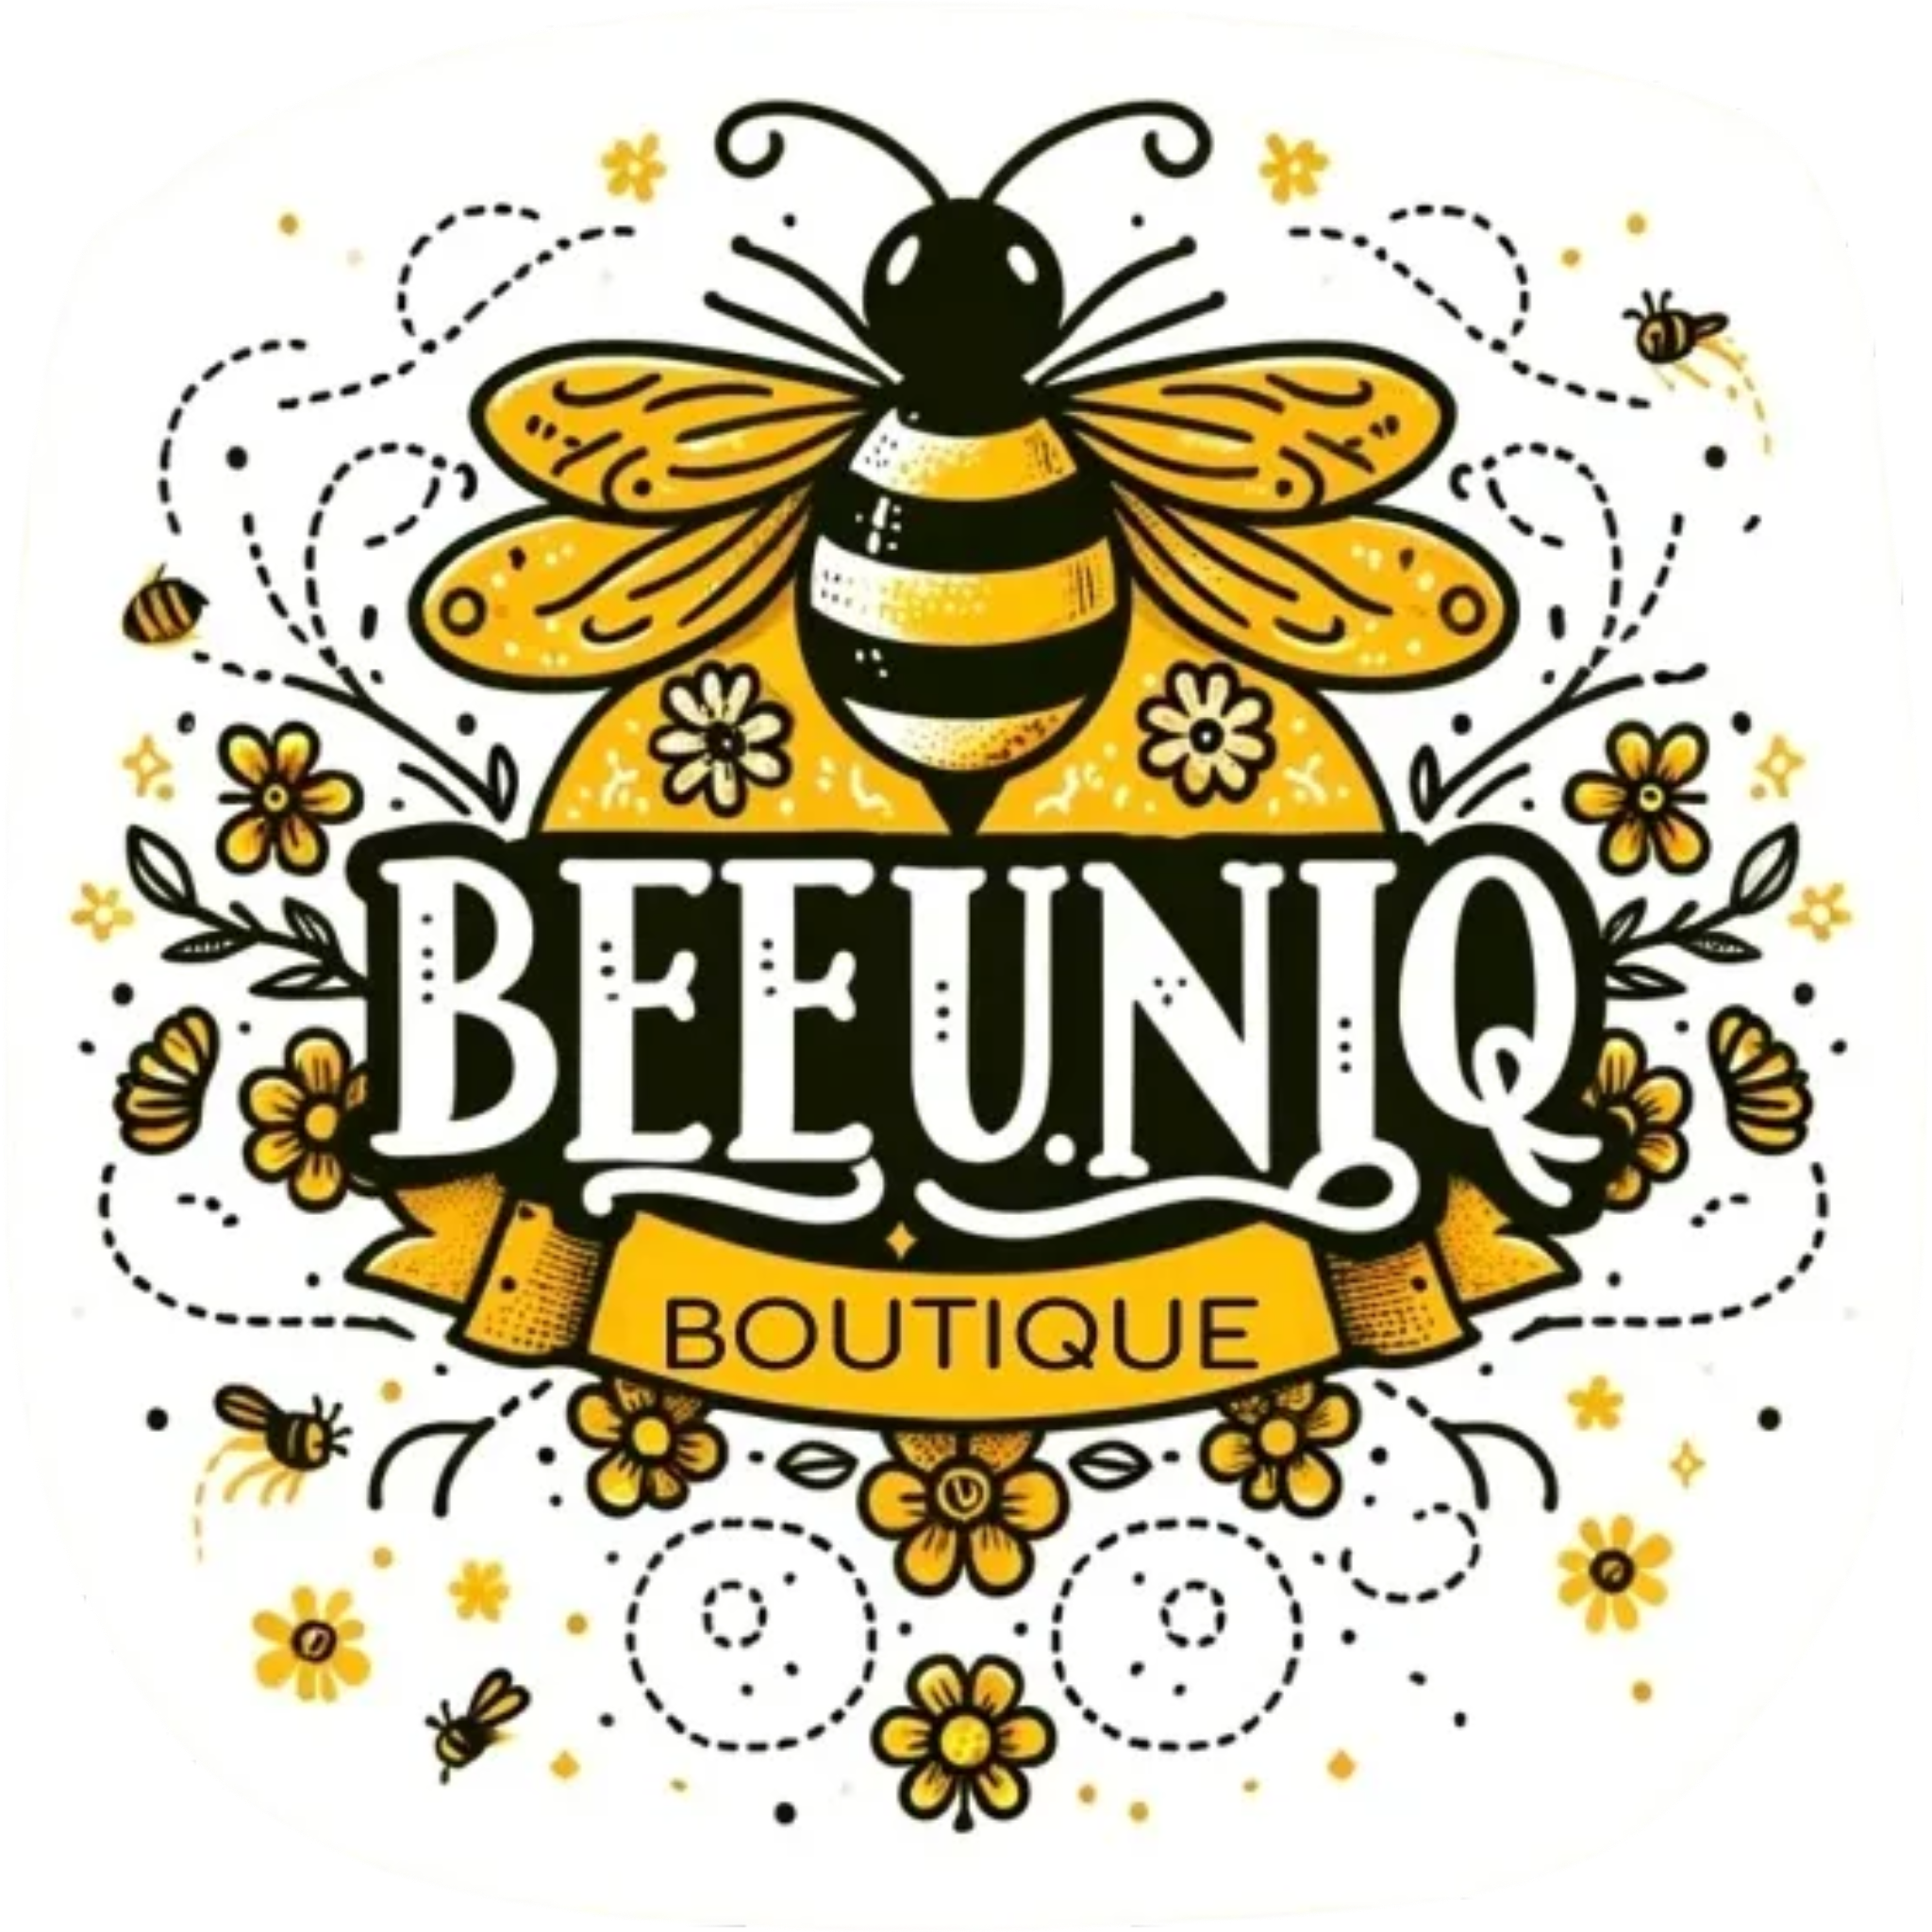 BeeUniQ Boutique 